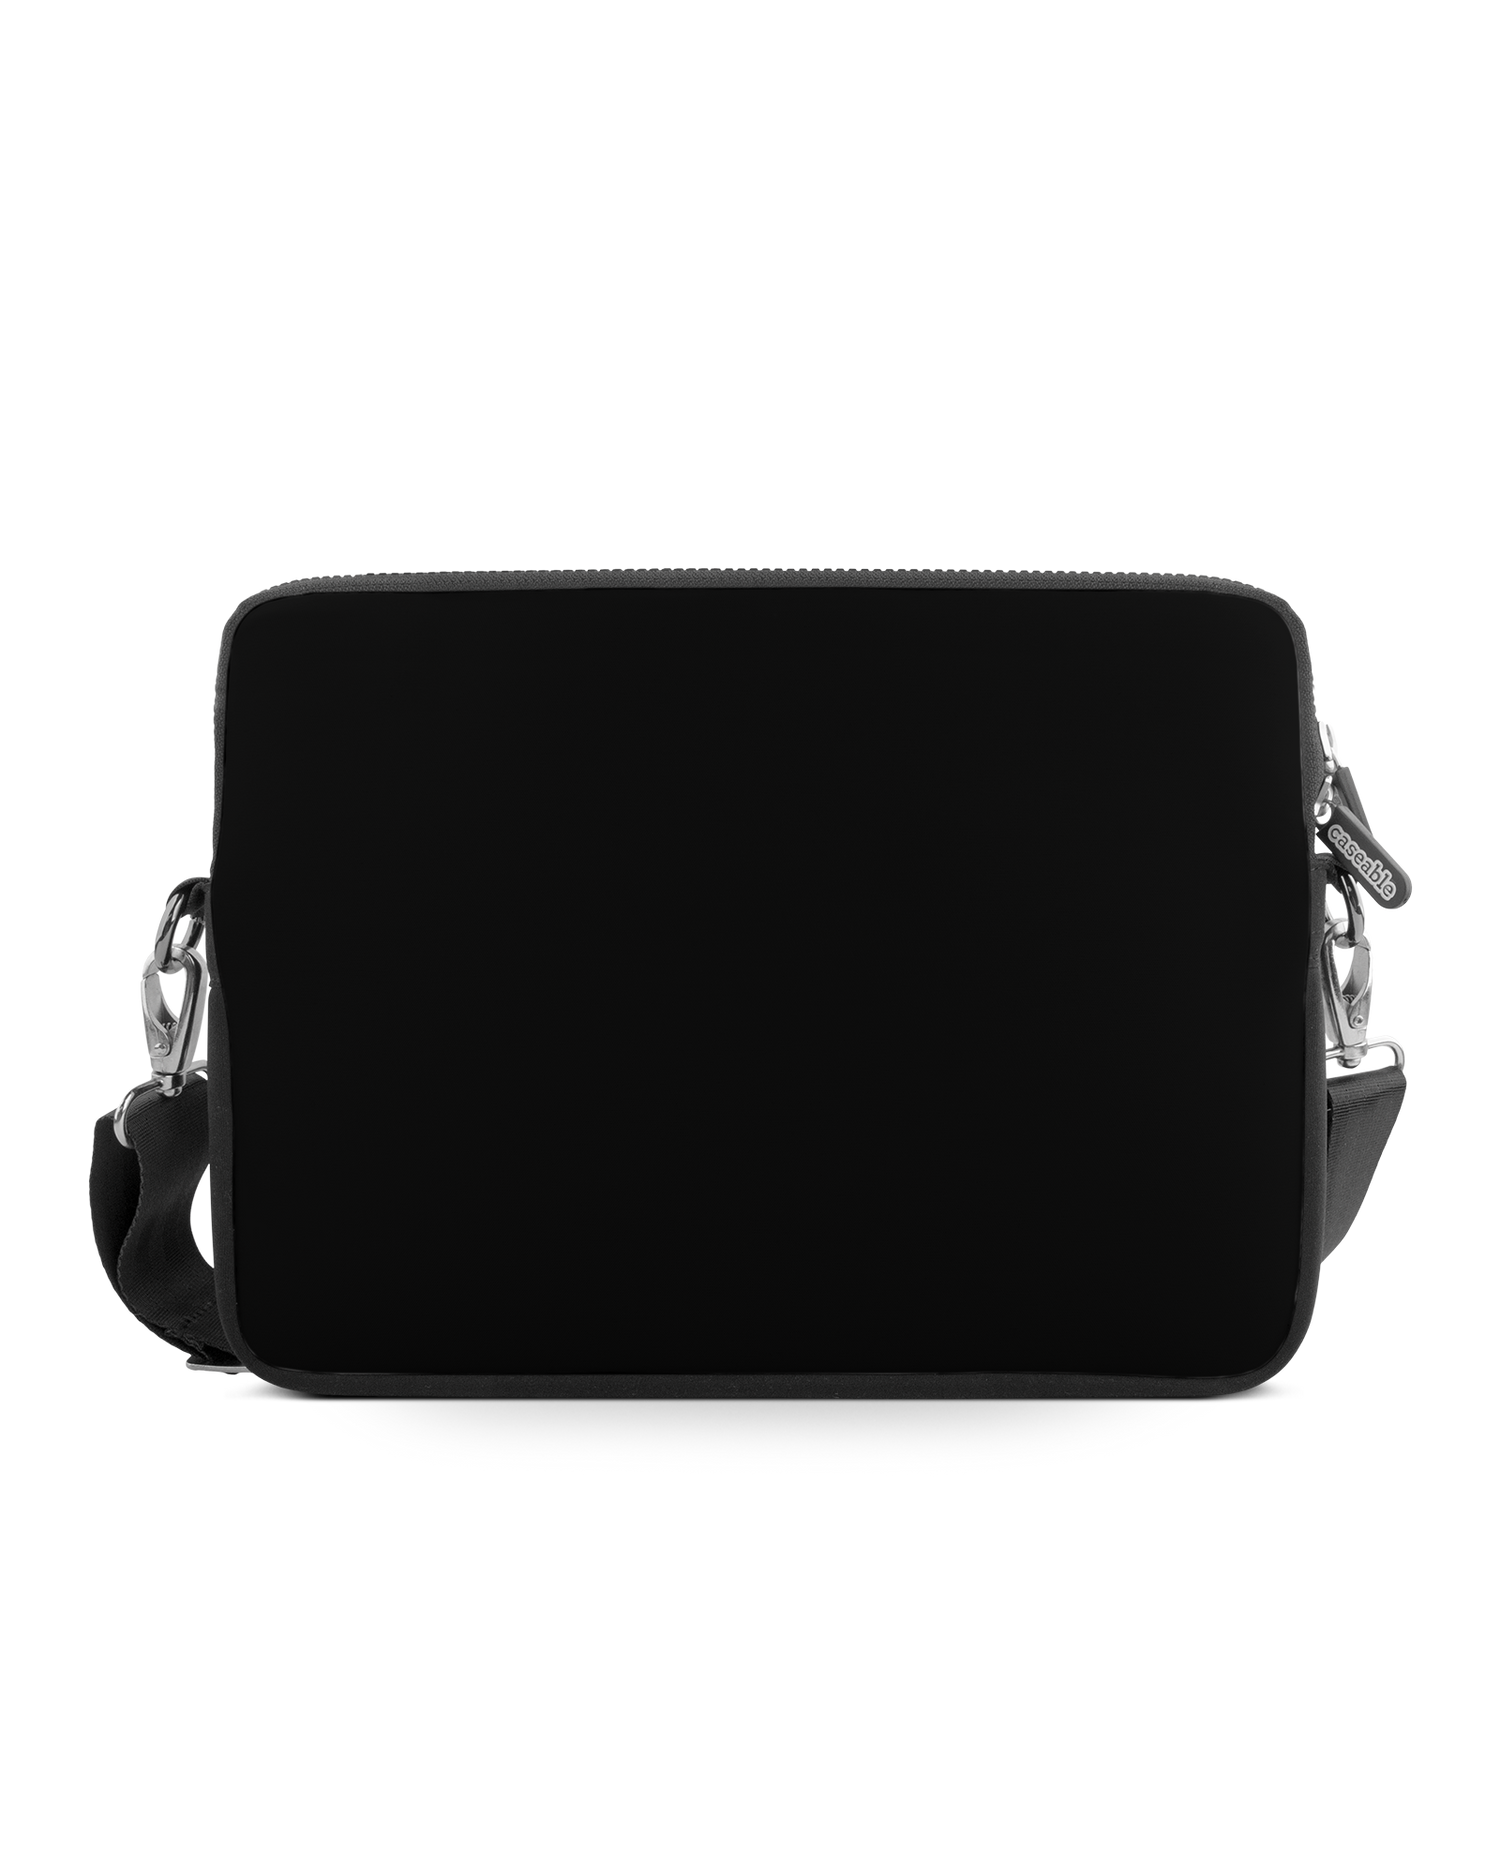 BLACK Premium Laptoptasche 17 Zoll: Vorderansicht